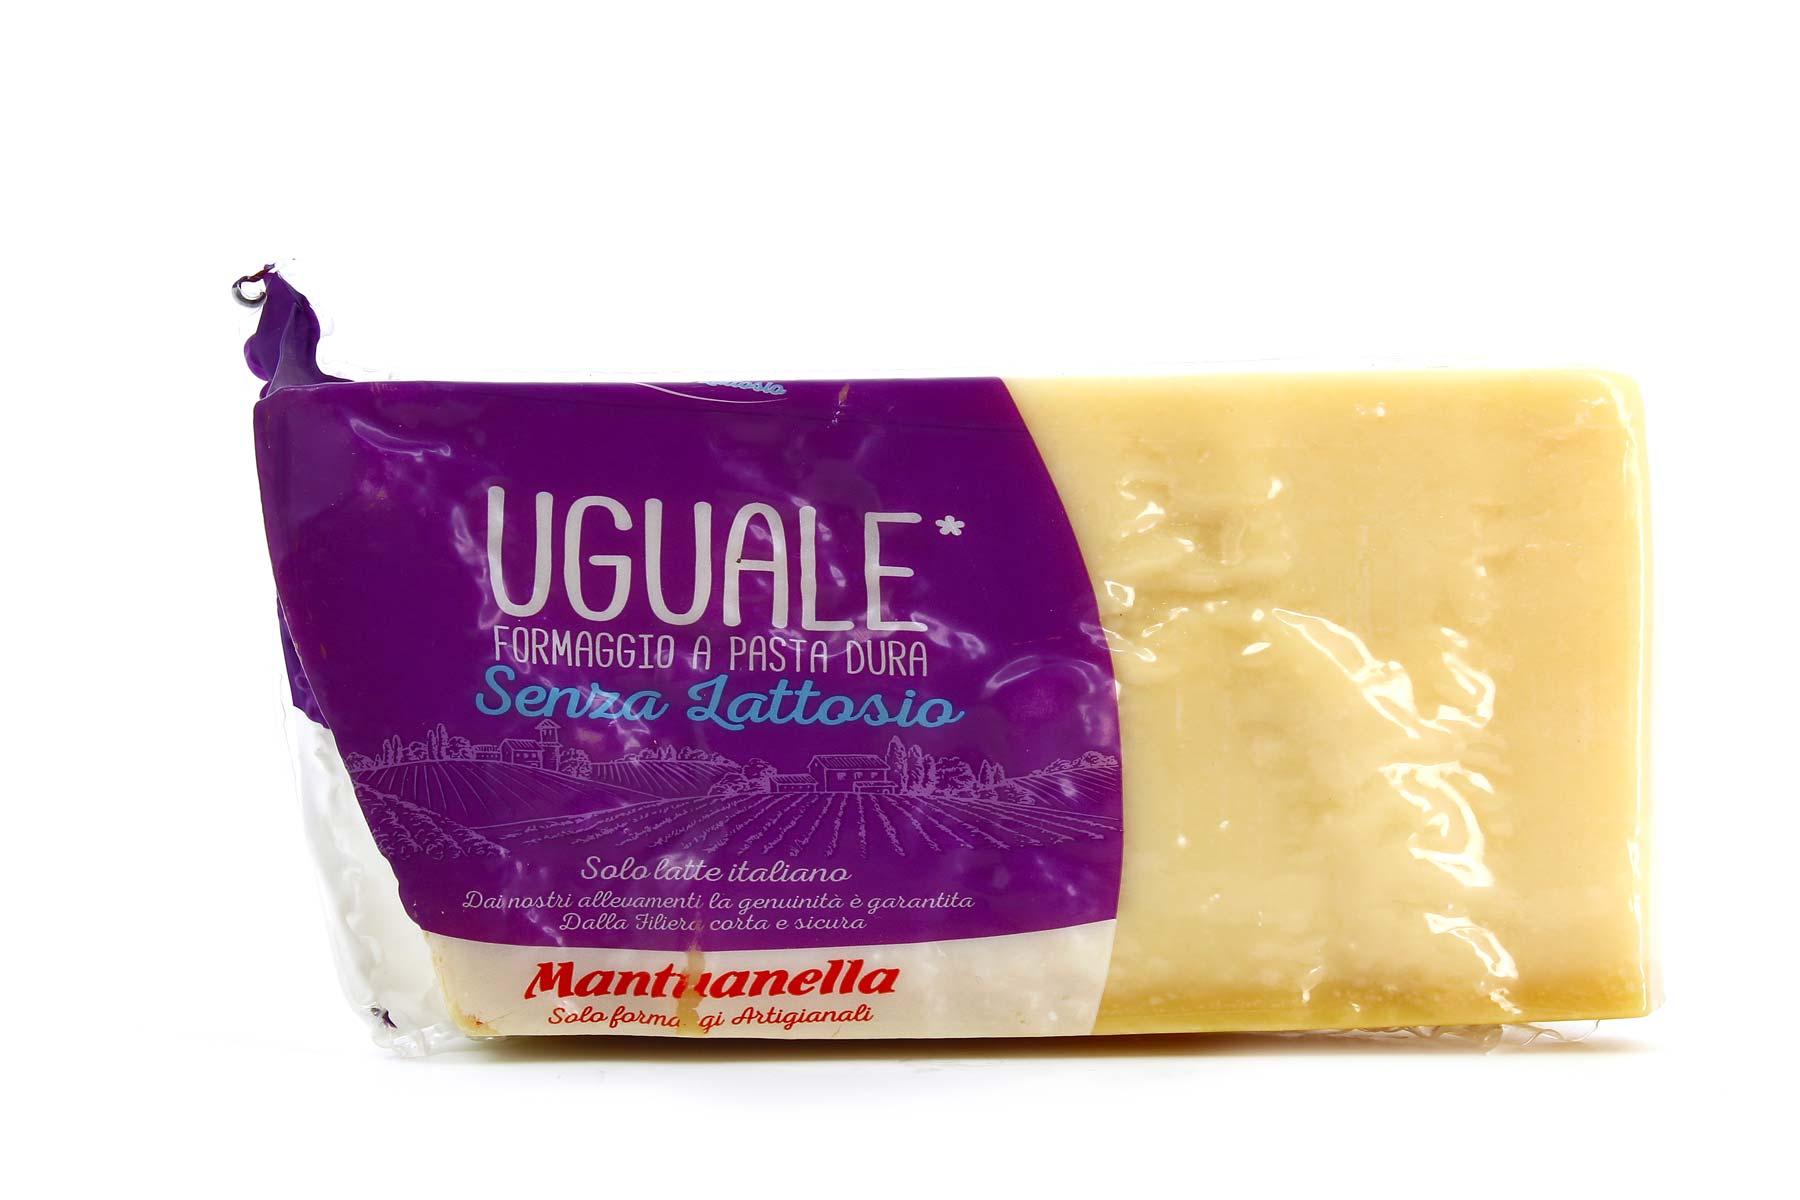 Uguale, formaggio senza lattosio a pasta dura